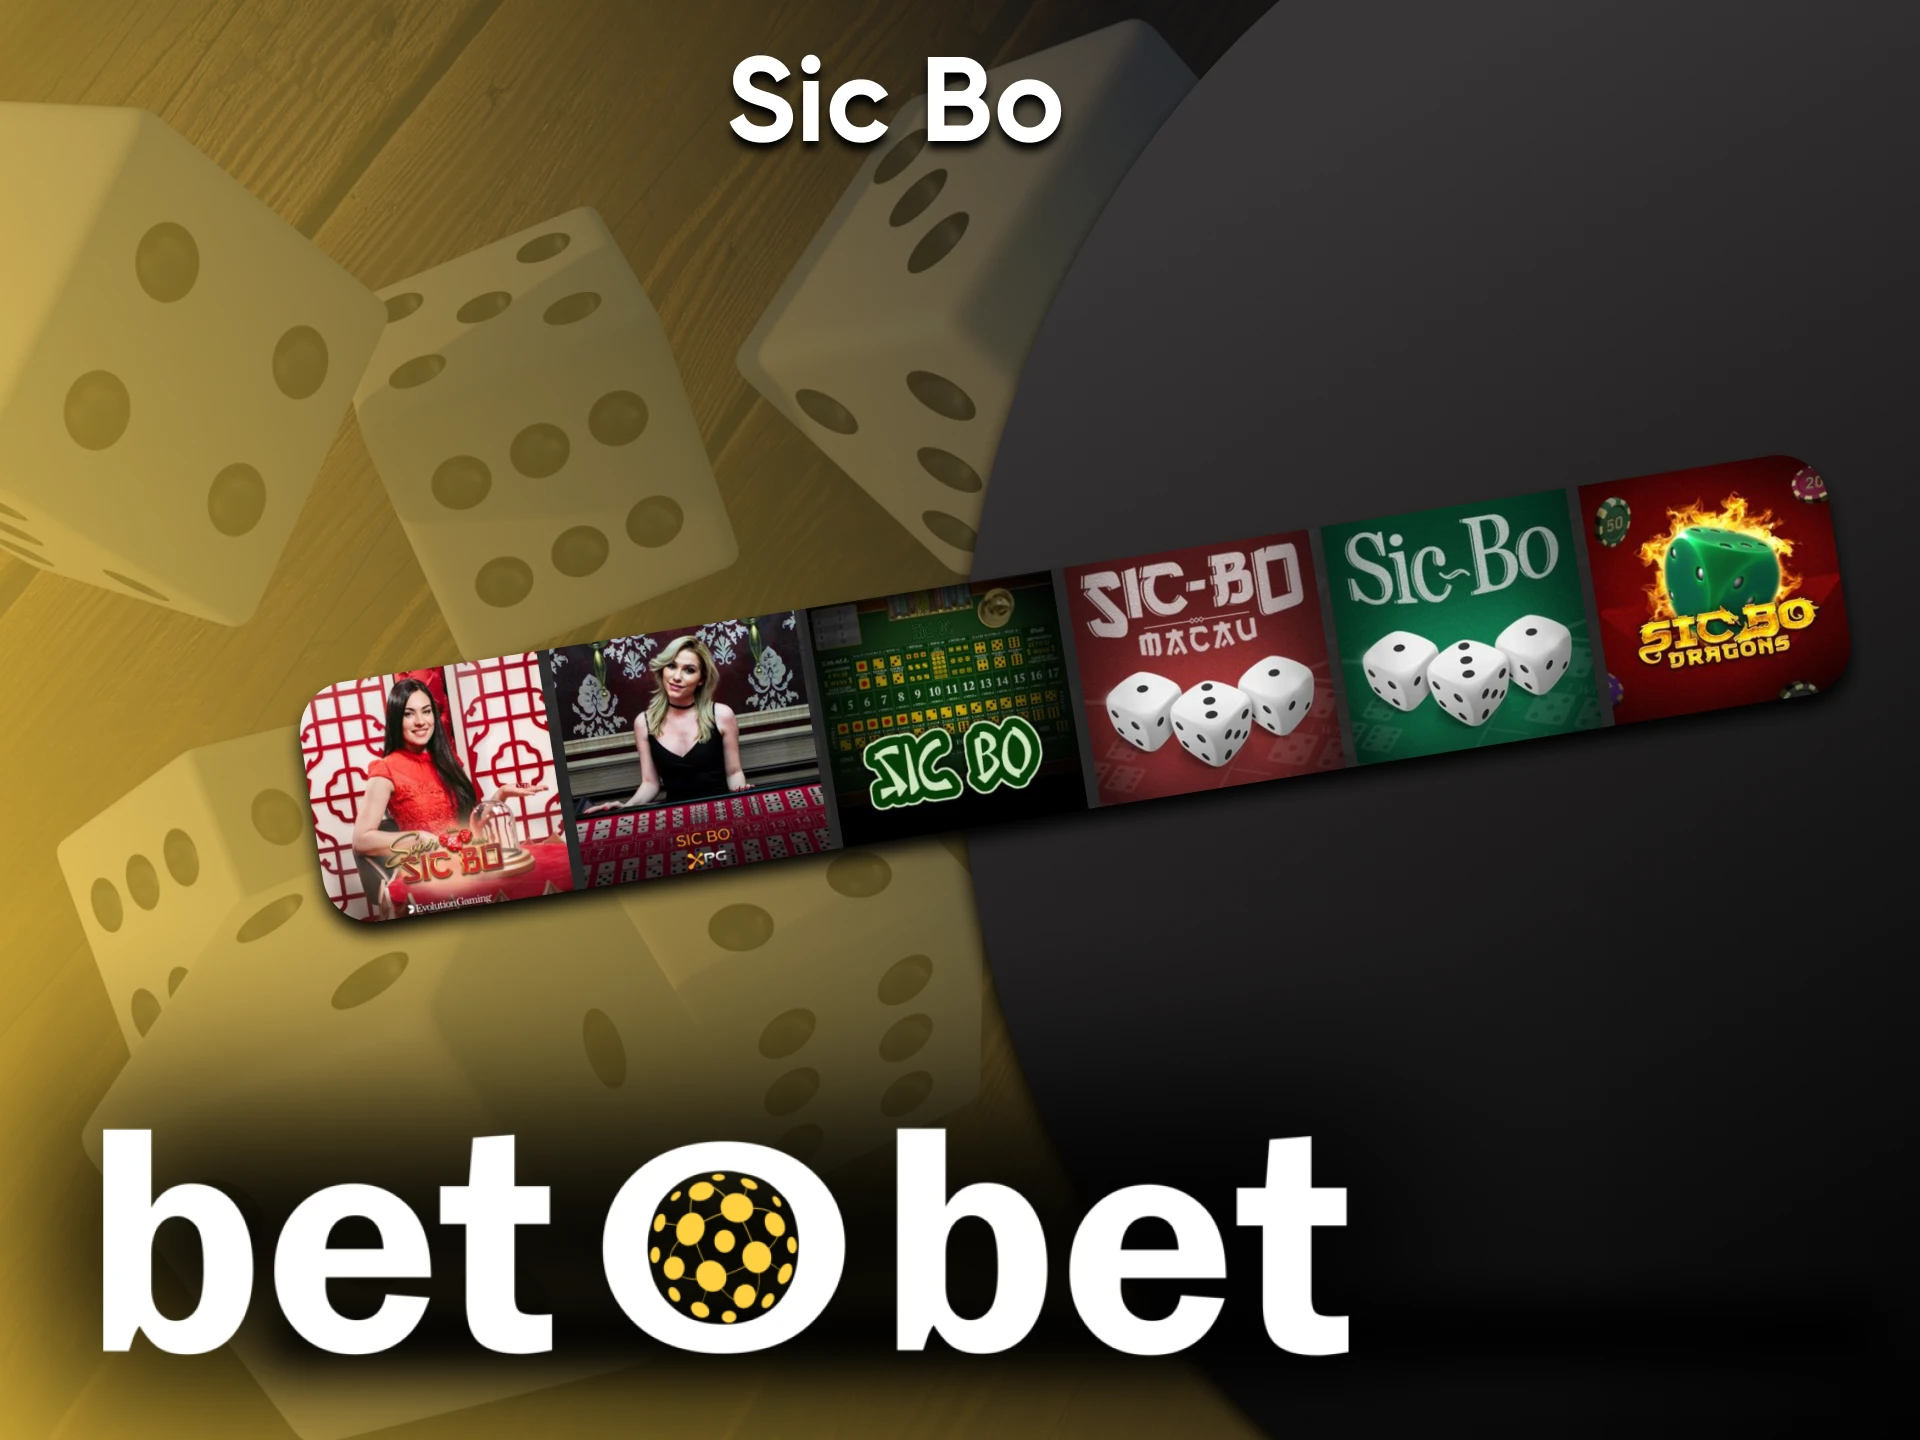 Para jogar Sic Bo, vá a uma seção especial do Betobet.